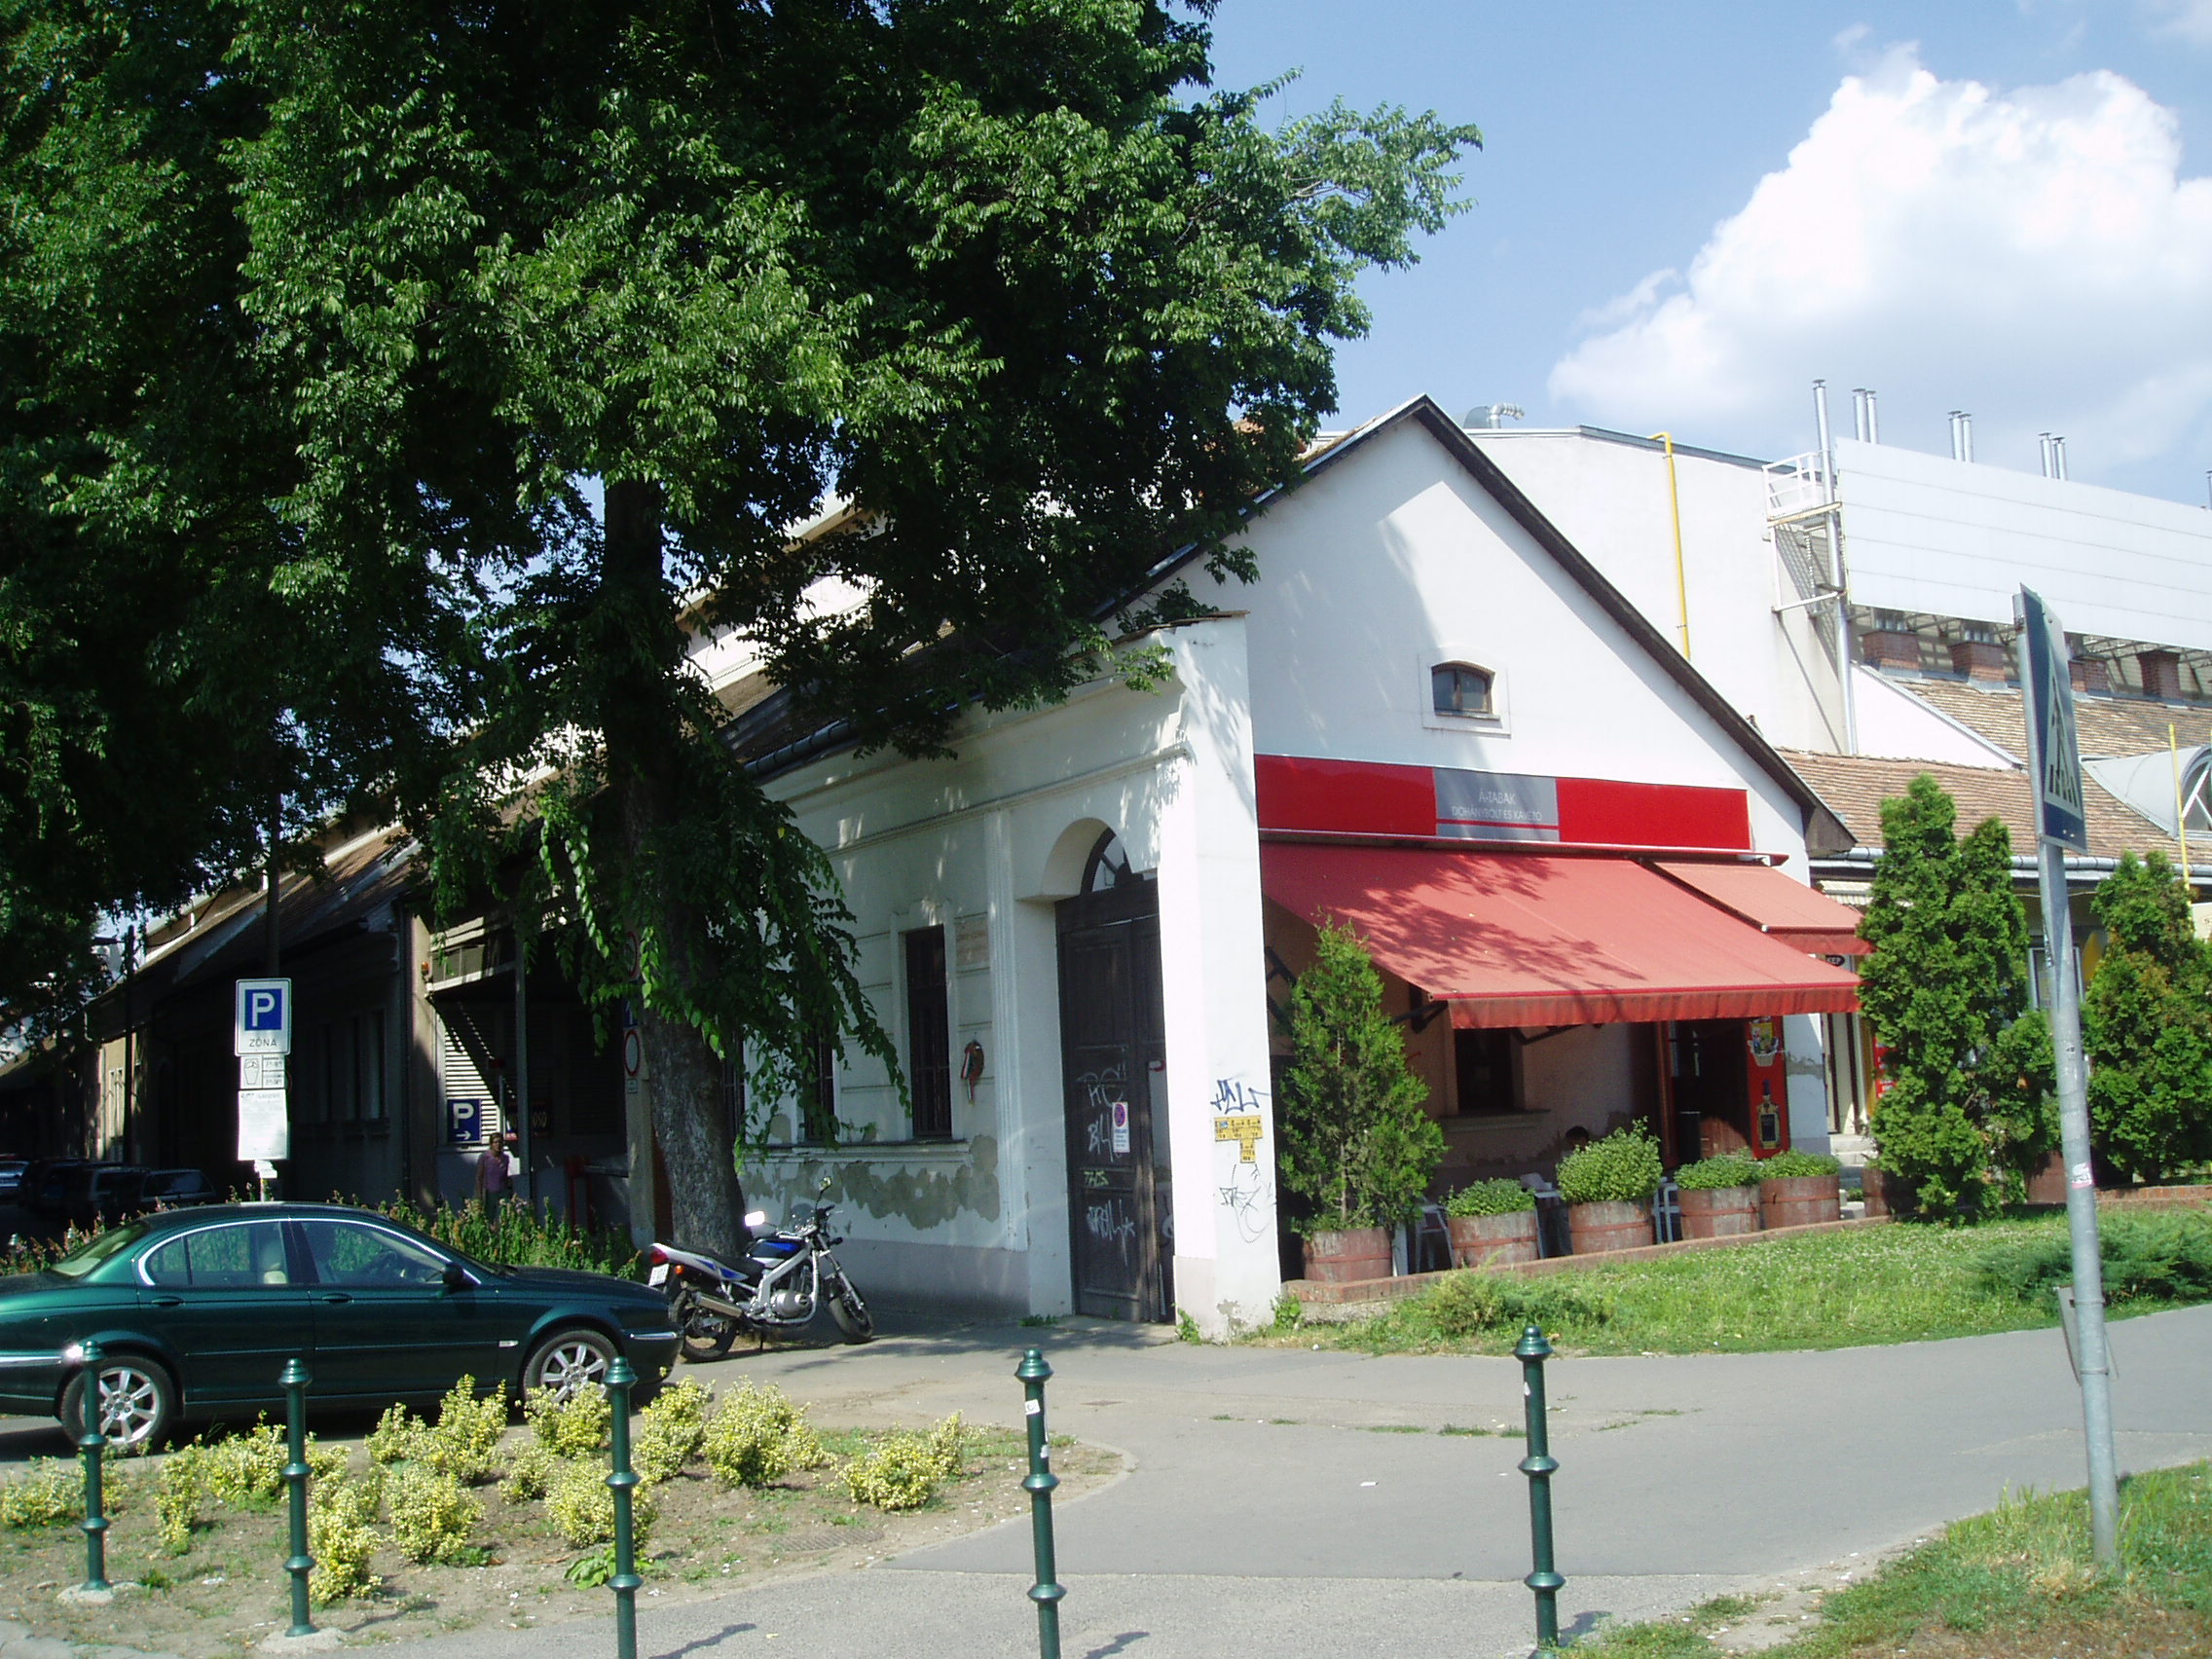 Debrecen, Darabos utca 19.

